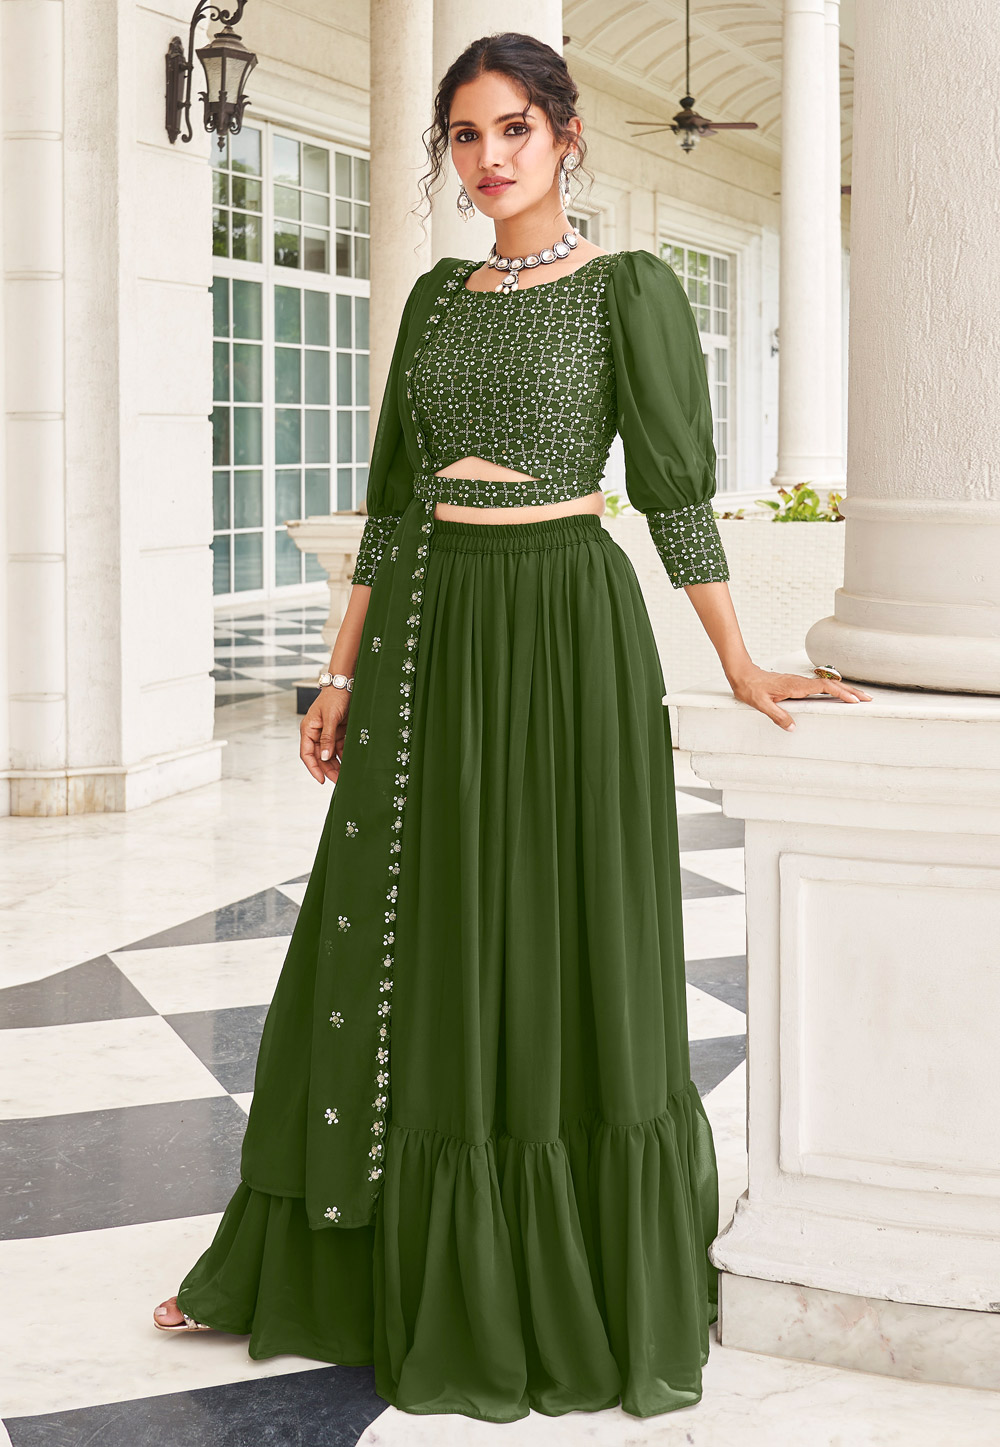 Ghagra Choli - Buy Indian Chaniya Choli Dress Online | Ghagra Choli Designs